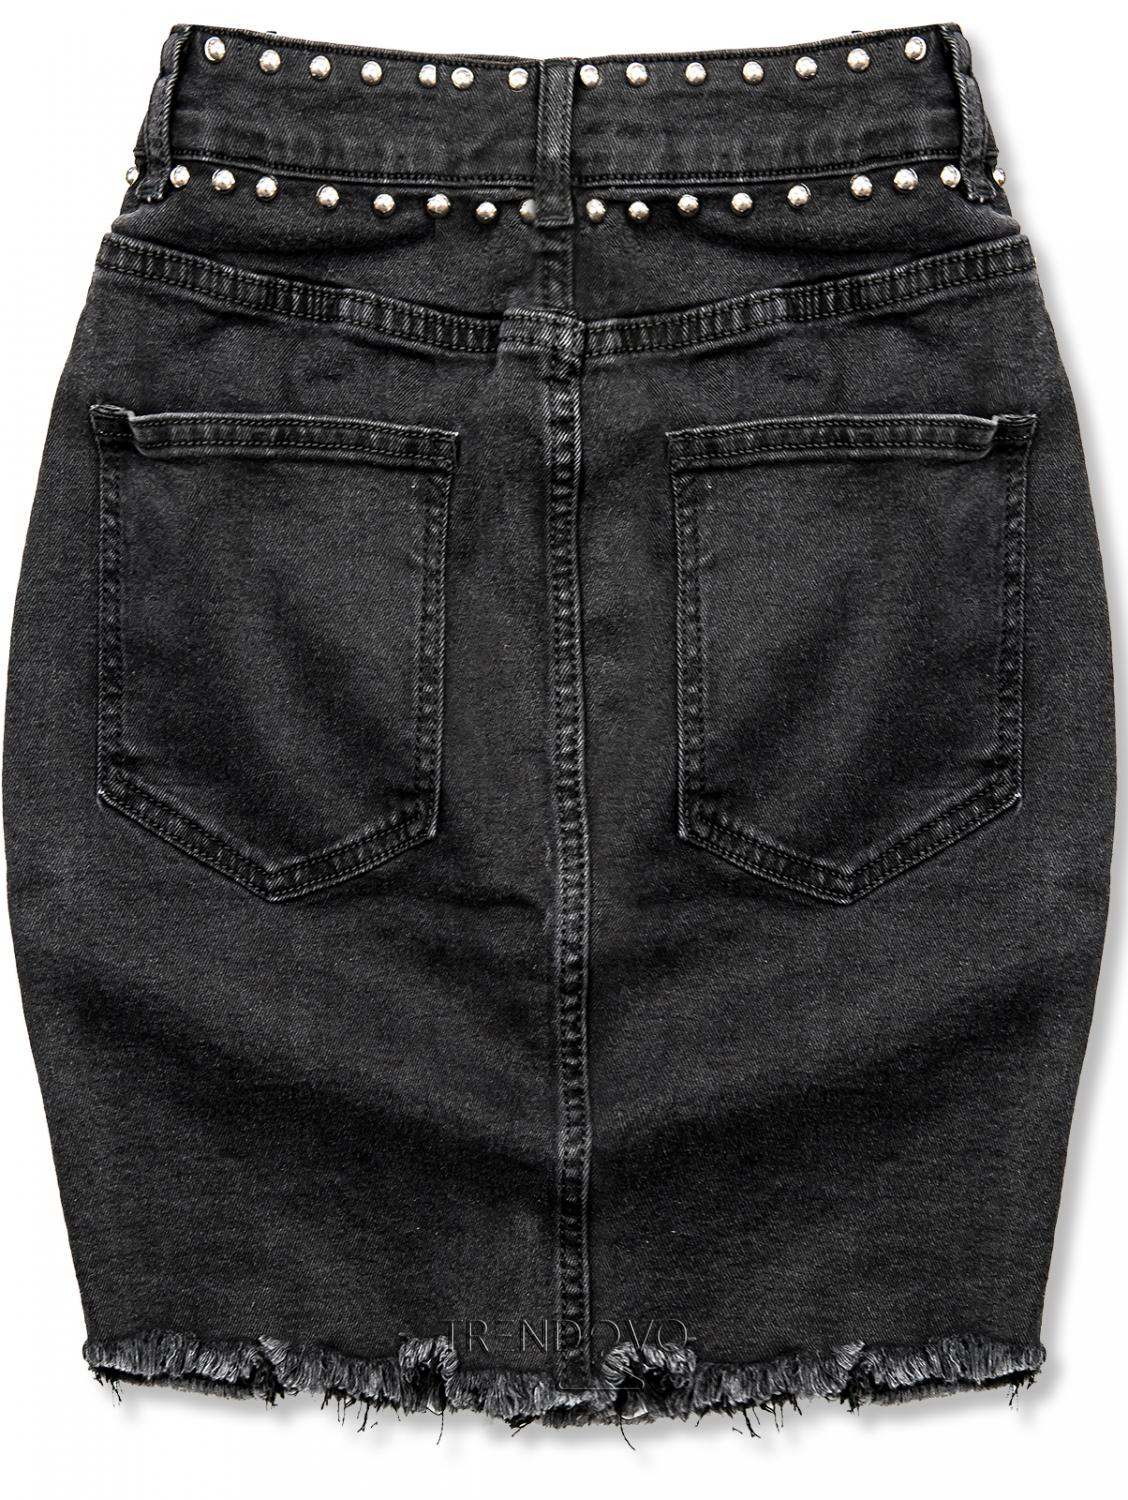 Čierna jeans sukňa so striebornými nitmi